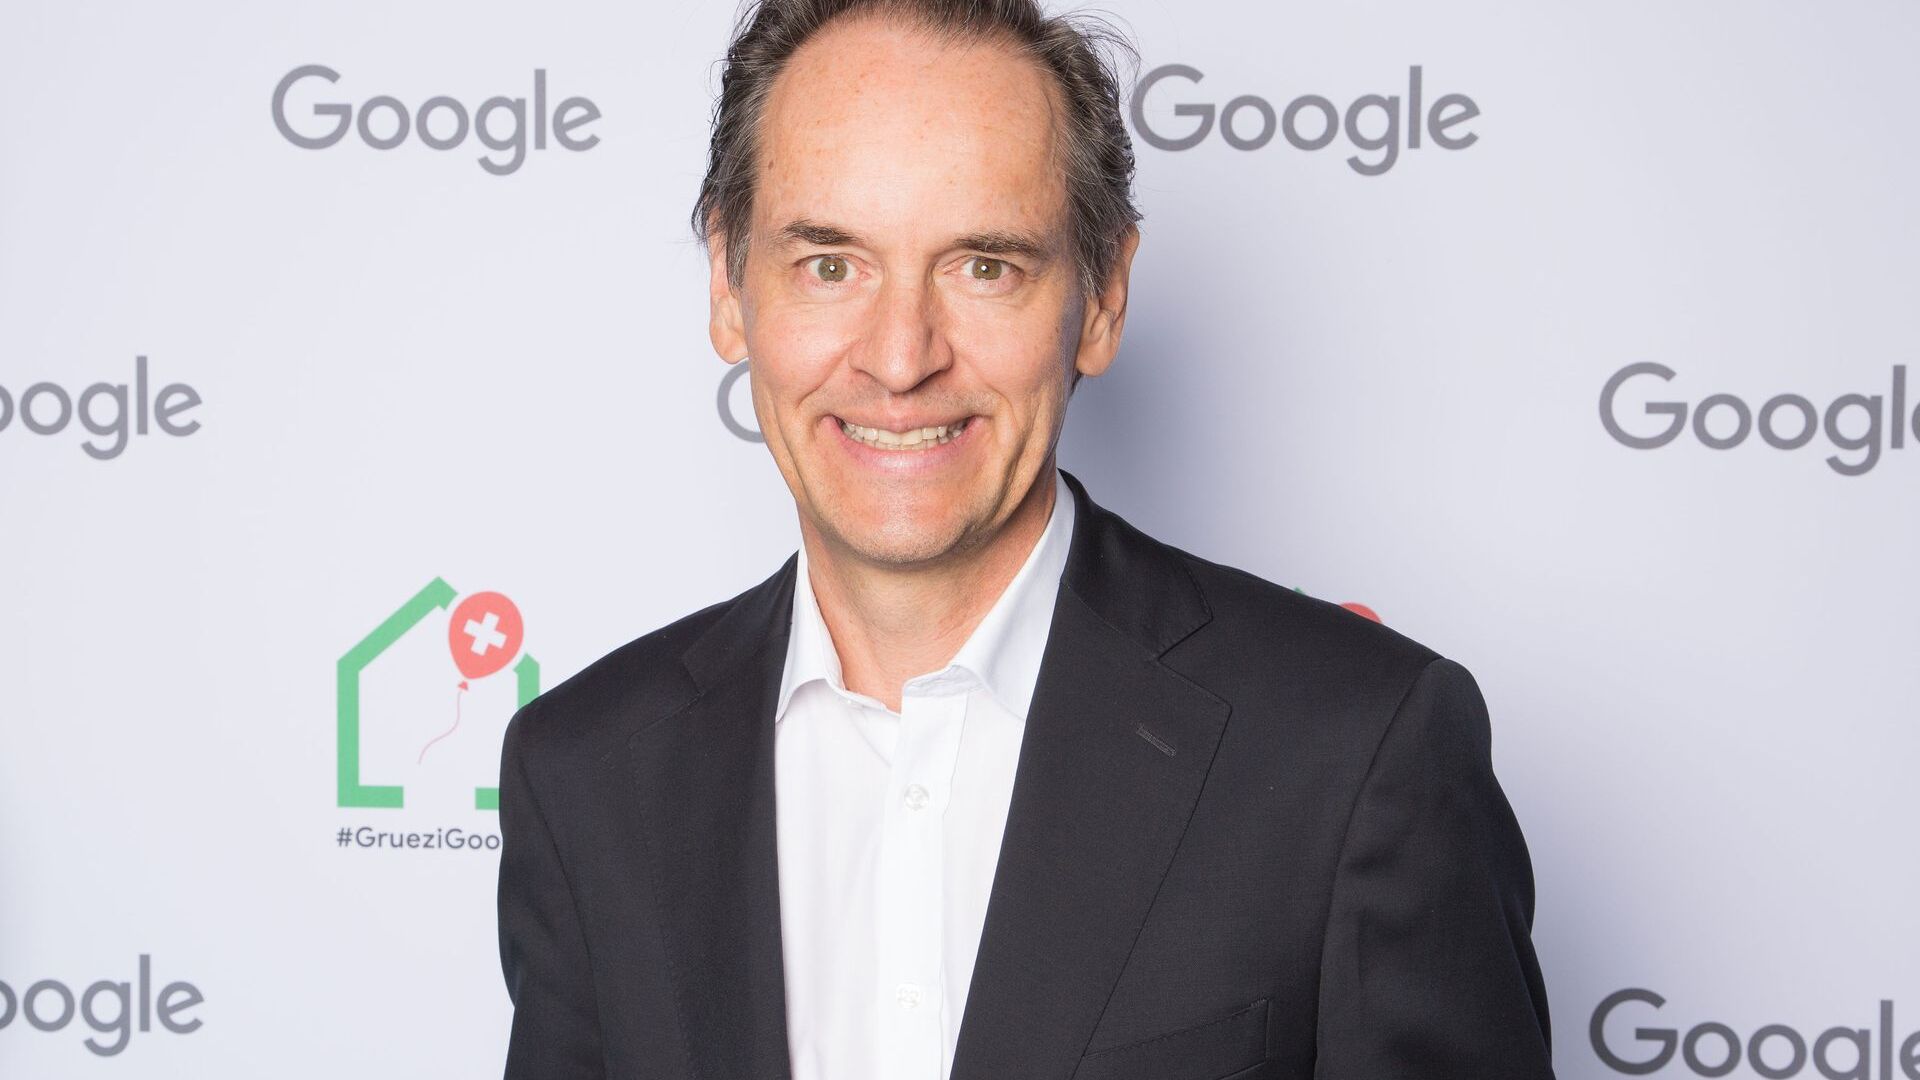 Google-ի Շվեյցարիայի տեղական տնօրեն Պատրիկ Ուորնինգը մասնակցել է նոր Google Campus Europaallee-ի պաշտոնական բացմանը Ցյուրիխում 27 թվականի հունիսի 2022-ին։